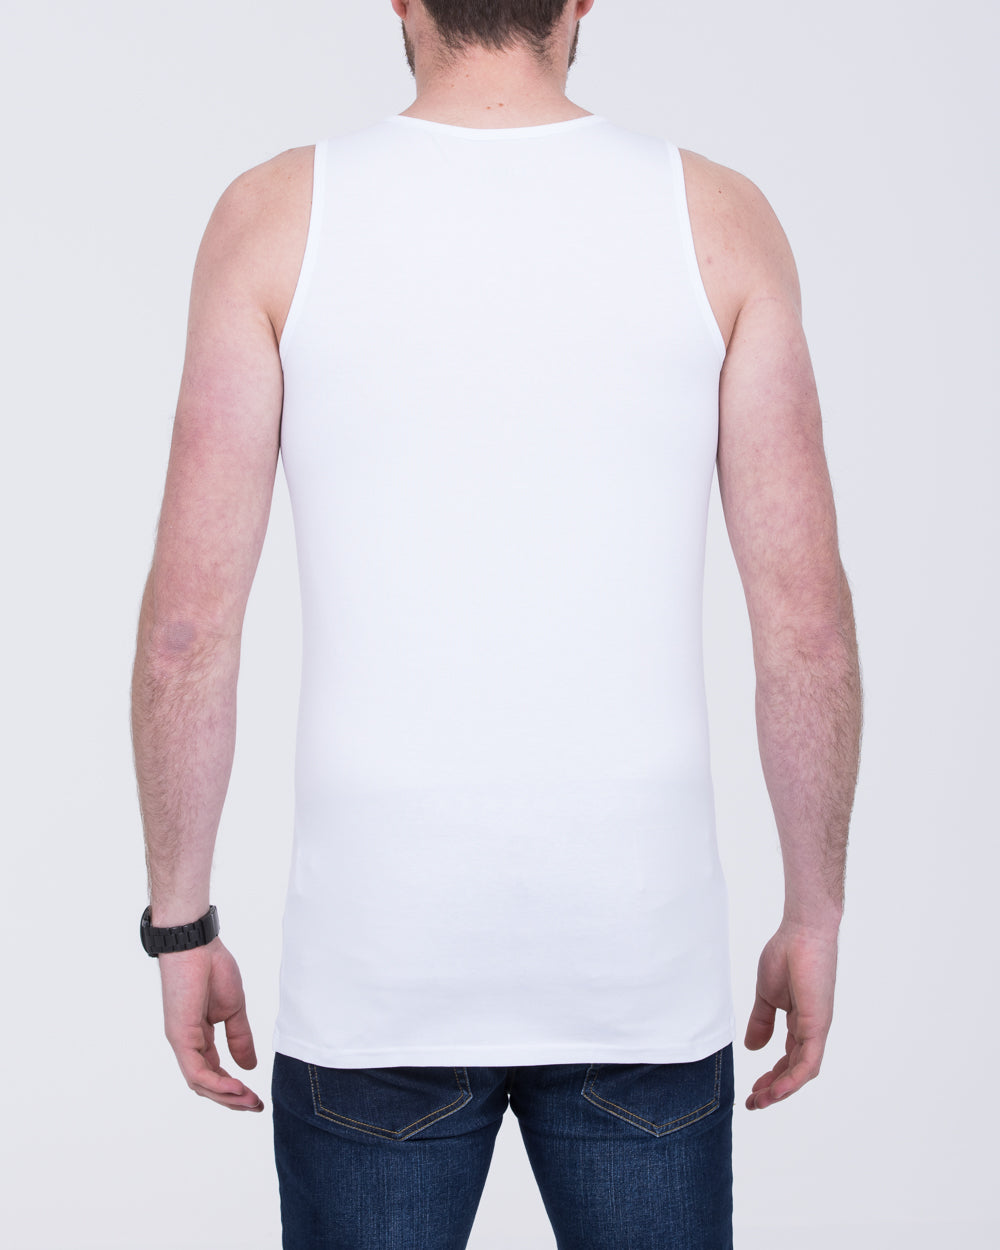 Girav Sleeveless Extra Tall Vest (white) Twin Pack